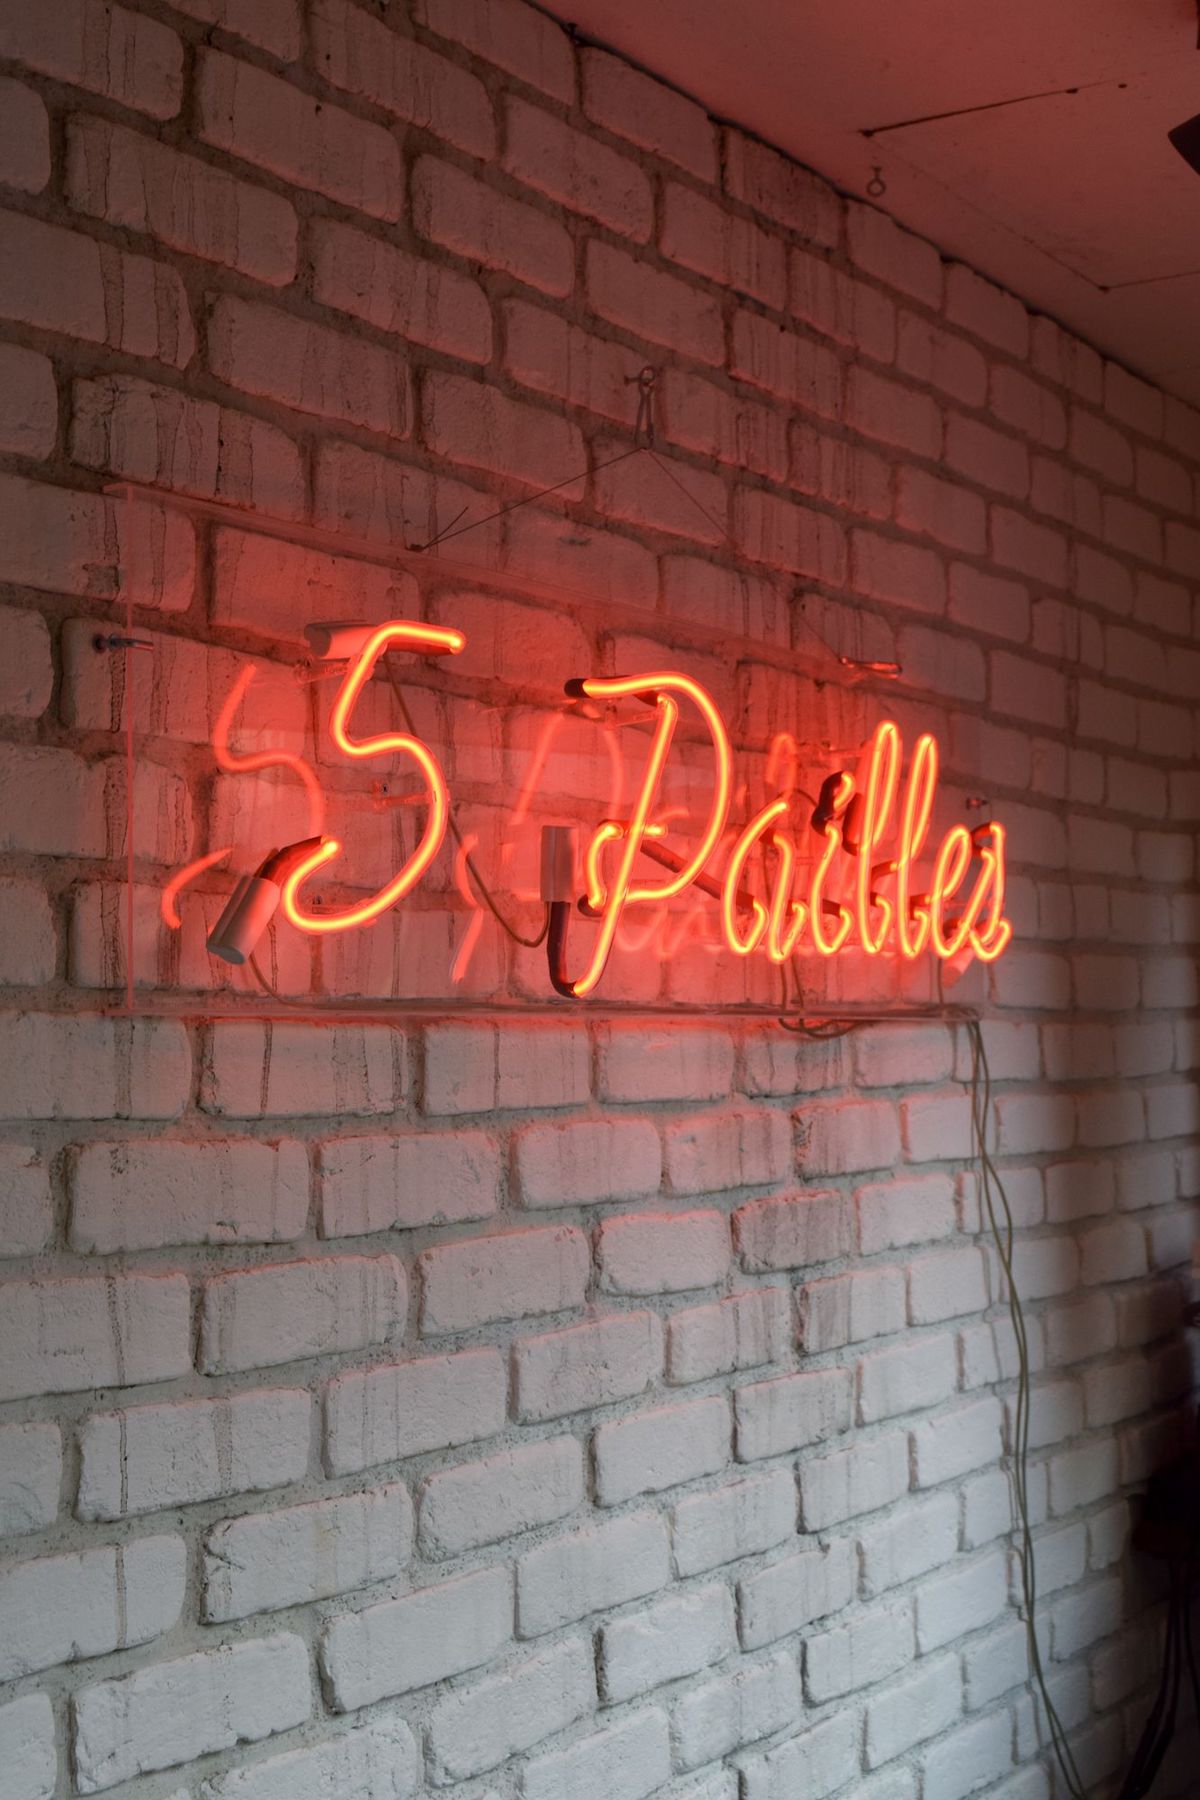 5 Pailles Coffee Neon Sign, Paris